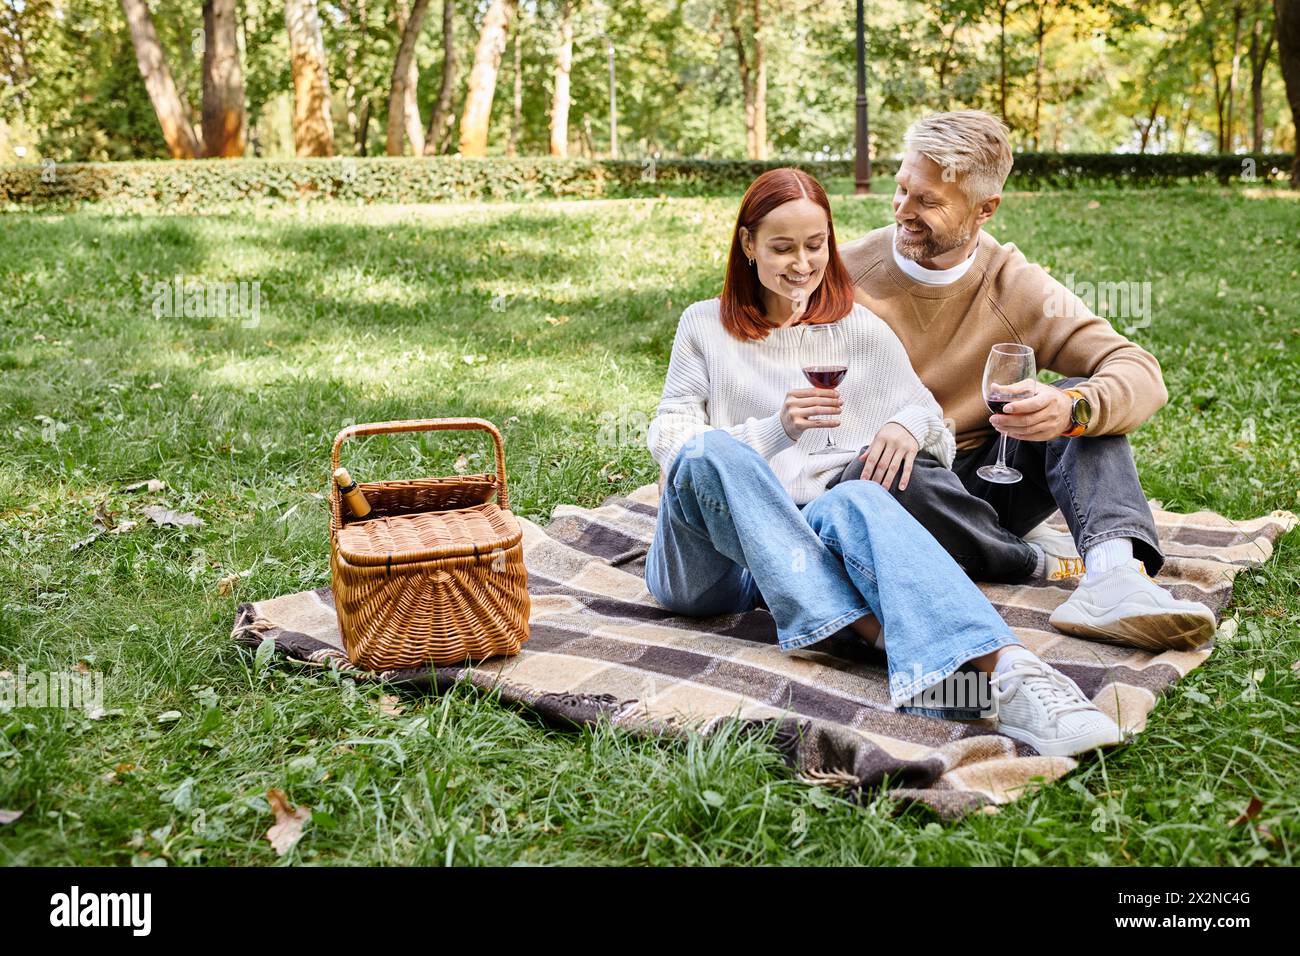 Ein Mann und eine Frau sitzen auf einer Decke im Gras und genießen einen friedlichen Tag im Park. Stockfoto